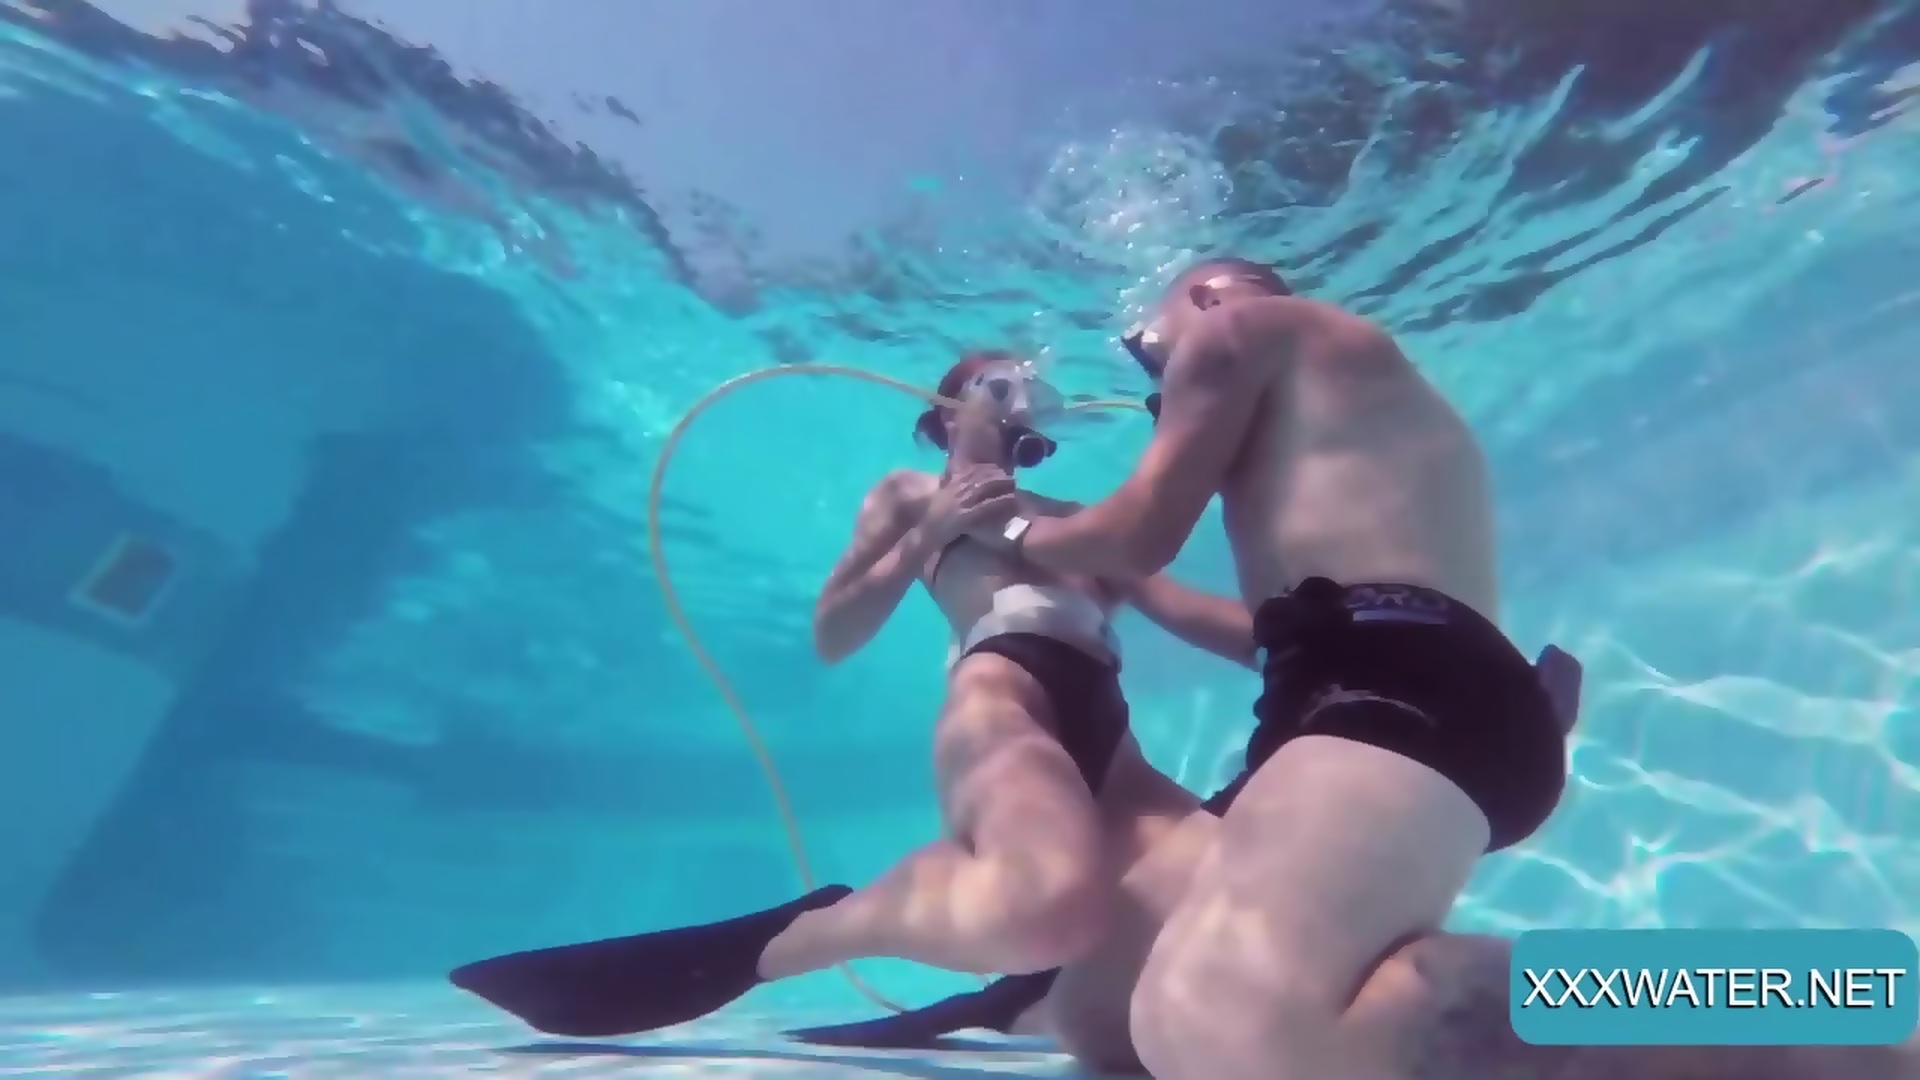 nikki chow voyeur girls underwater videos Sex Images Hq